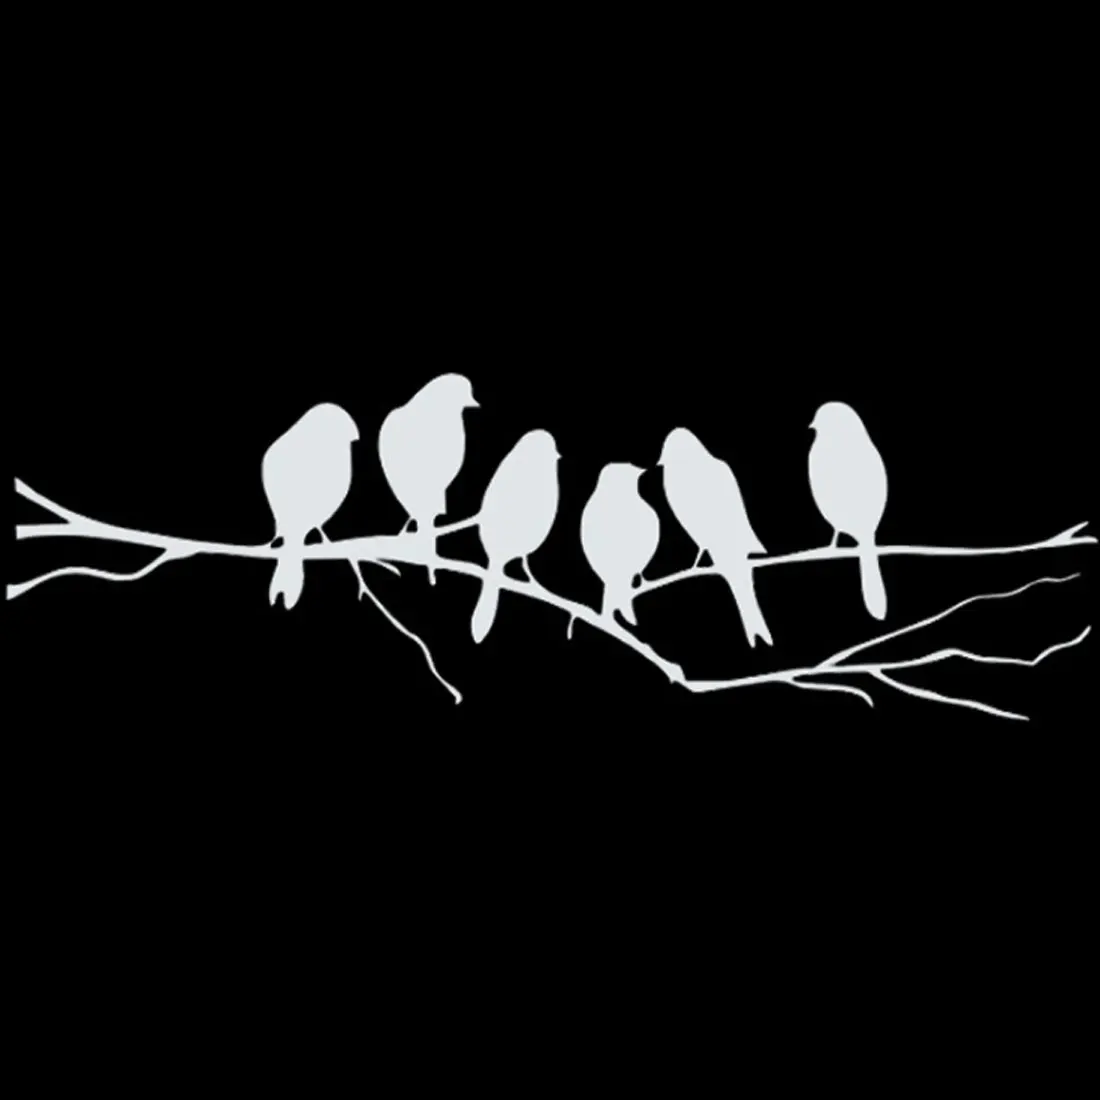 1 шт. украшения для дома, наклейки Съемный Черный товары для птиц на ветка дерева Наклейка на стену стикеры Гостиная настенные наклейки книги по искусству s - Цвет: silver white